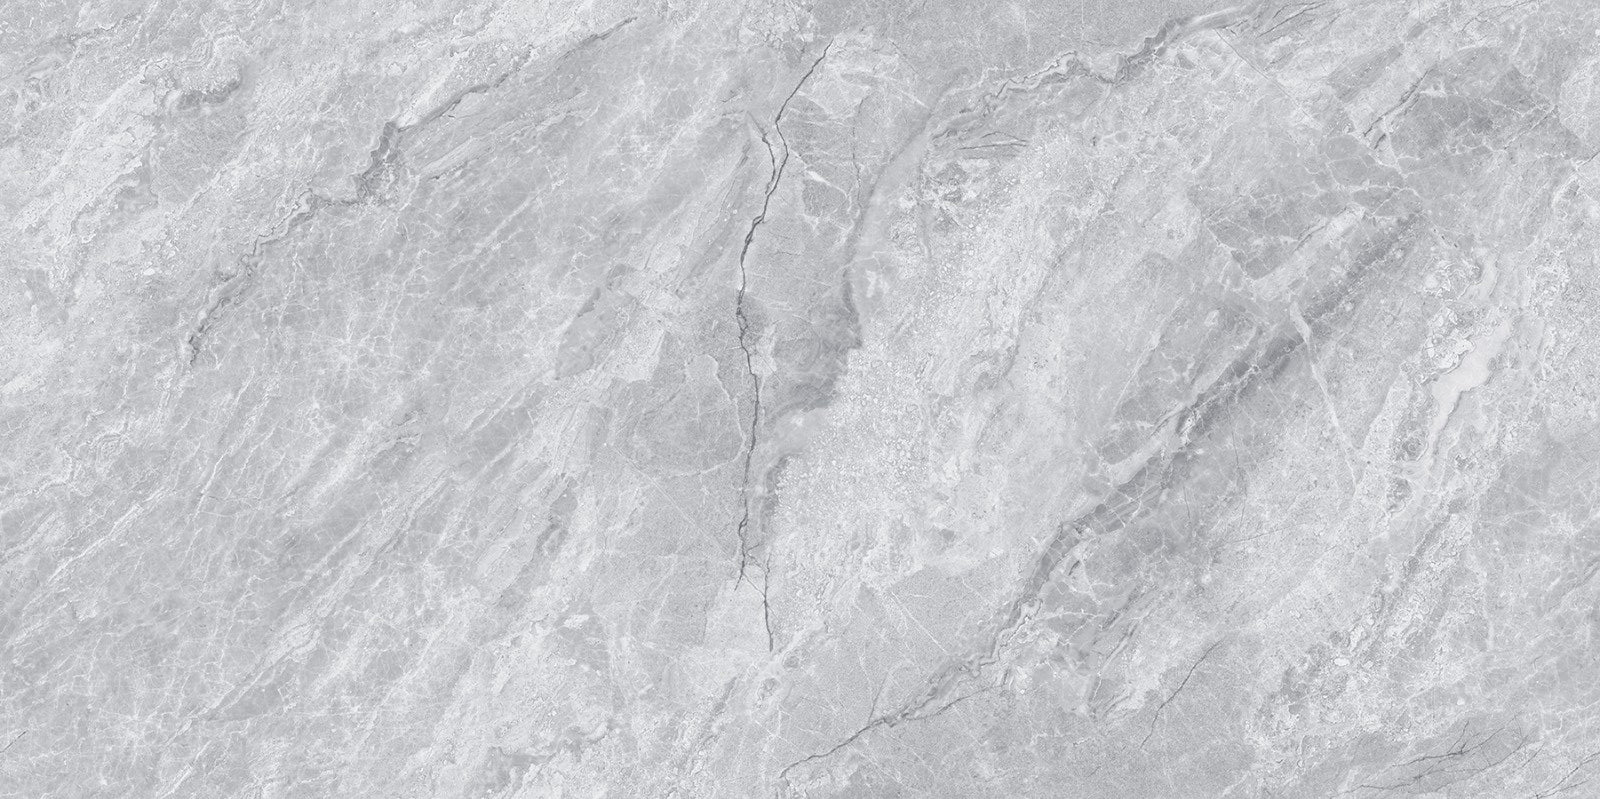 中國佛山瓷磚 China Foshan Marble Tiles Glossy 大理石瓷磚 連紋瓷磚 地磚 墻磚 釉面磚 亮光面 風間岩GT715032 75×150cm